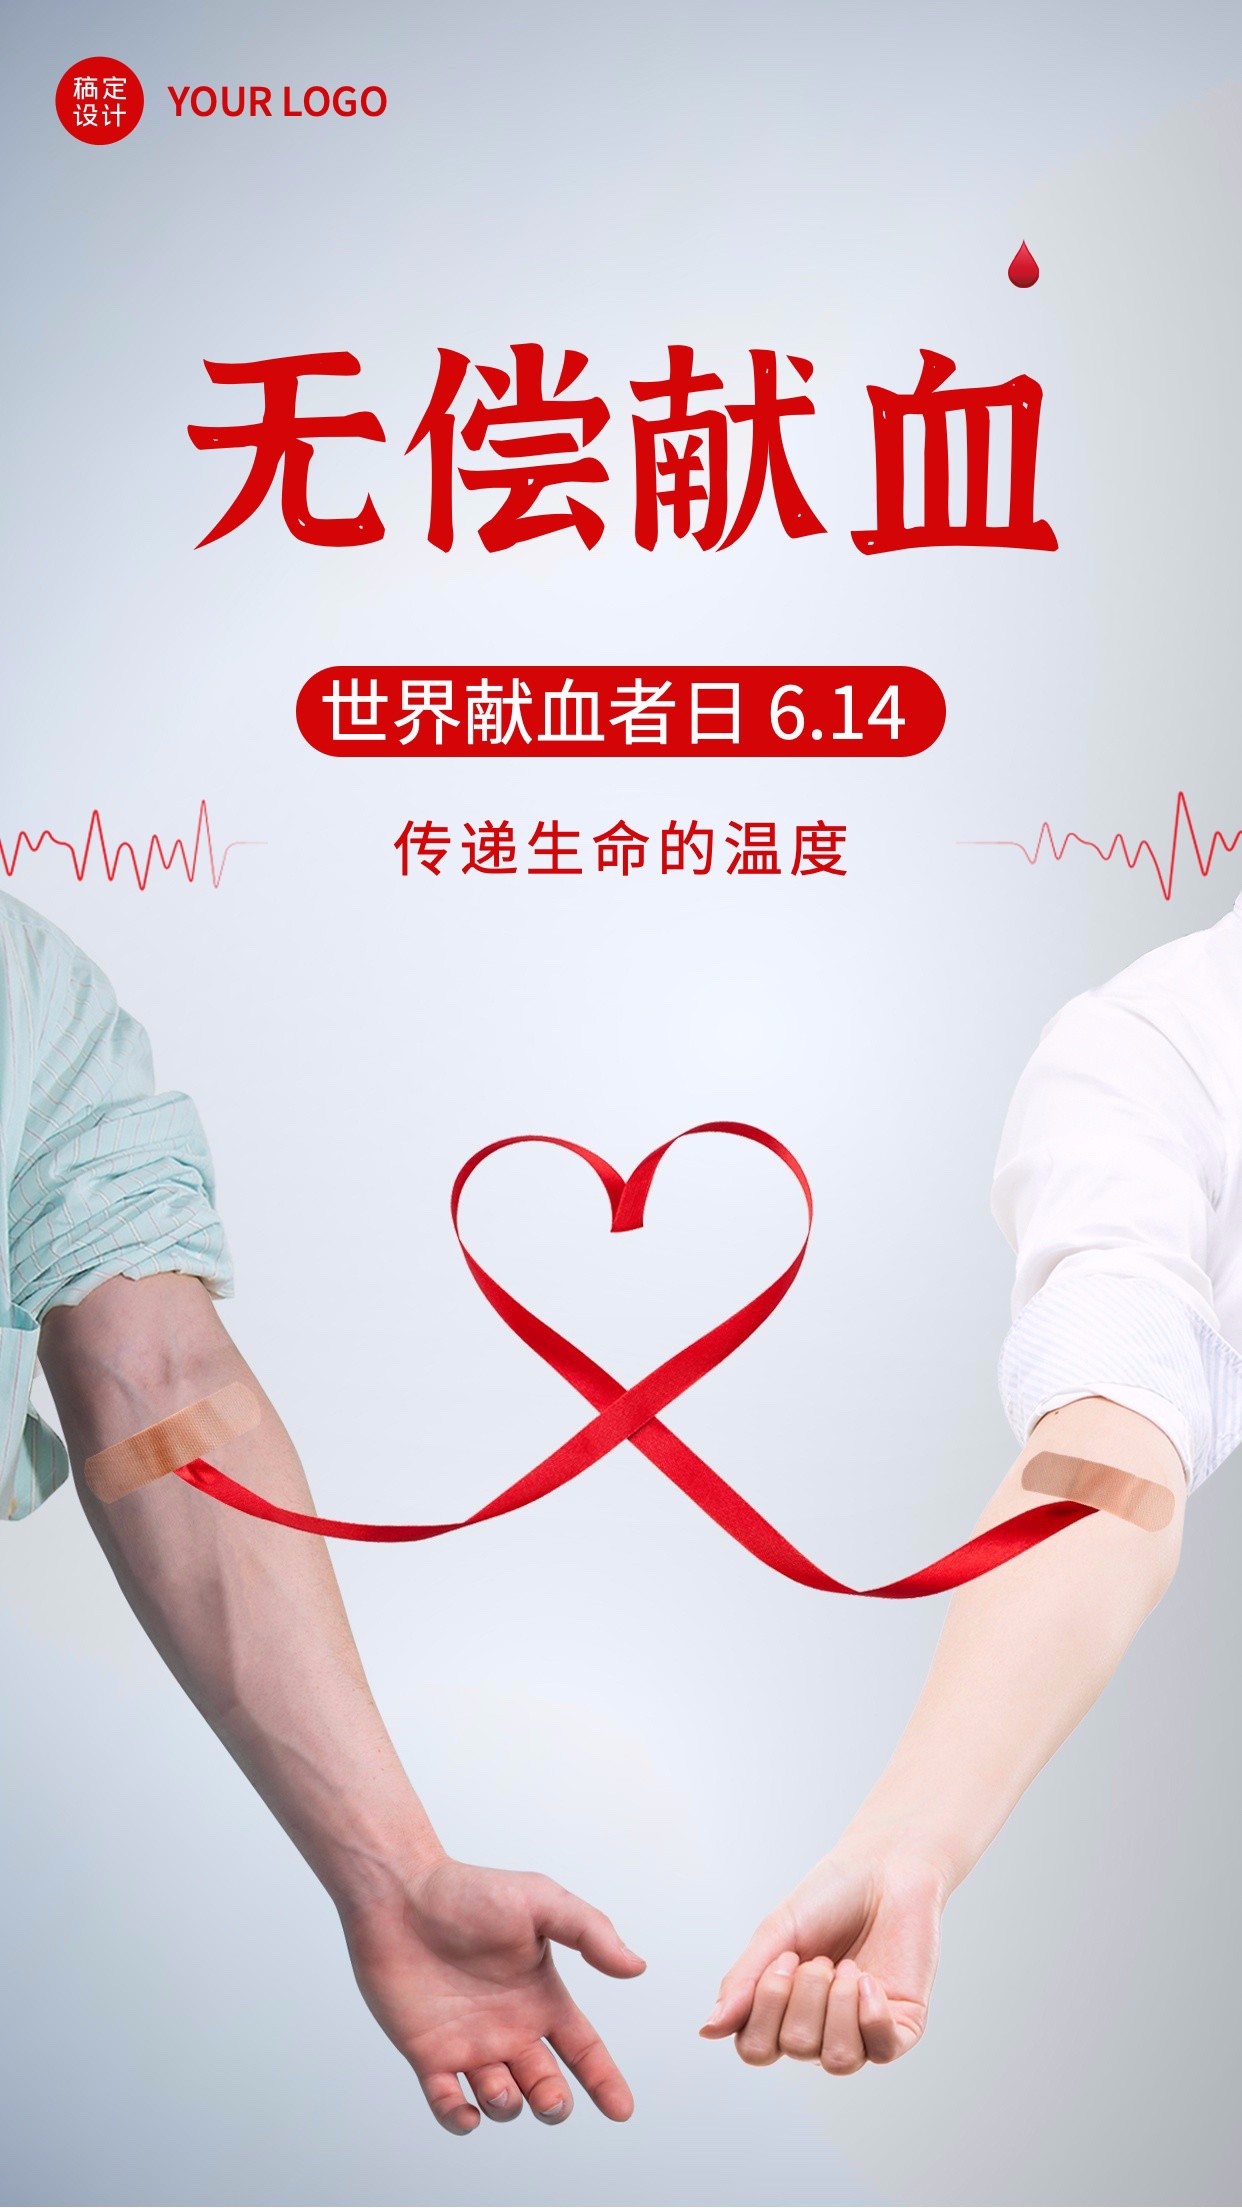 世界献血日节日宣传手机海报